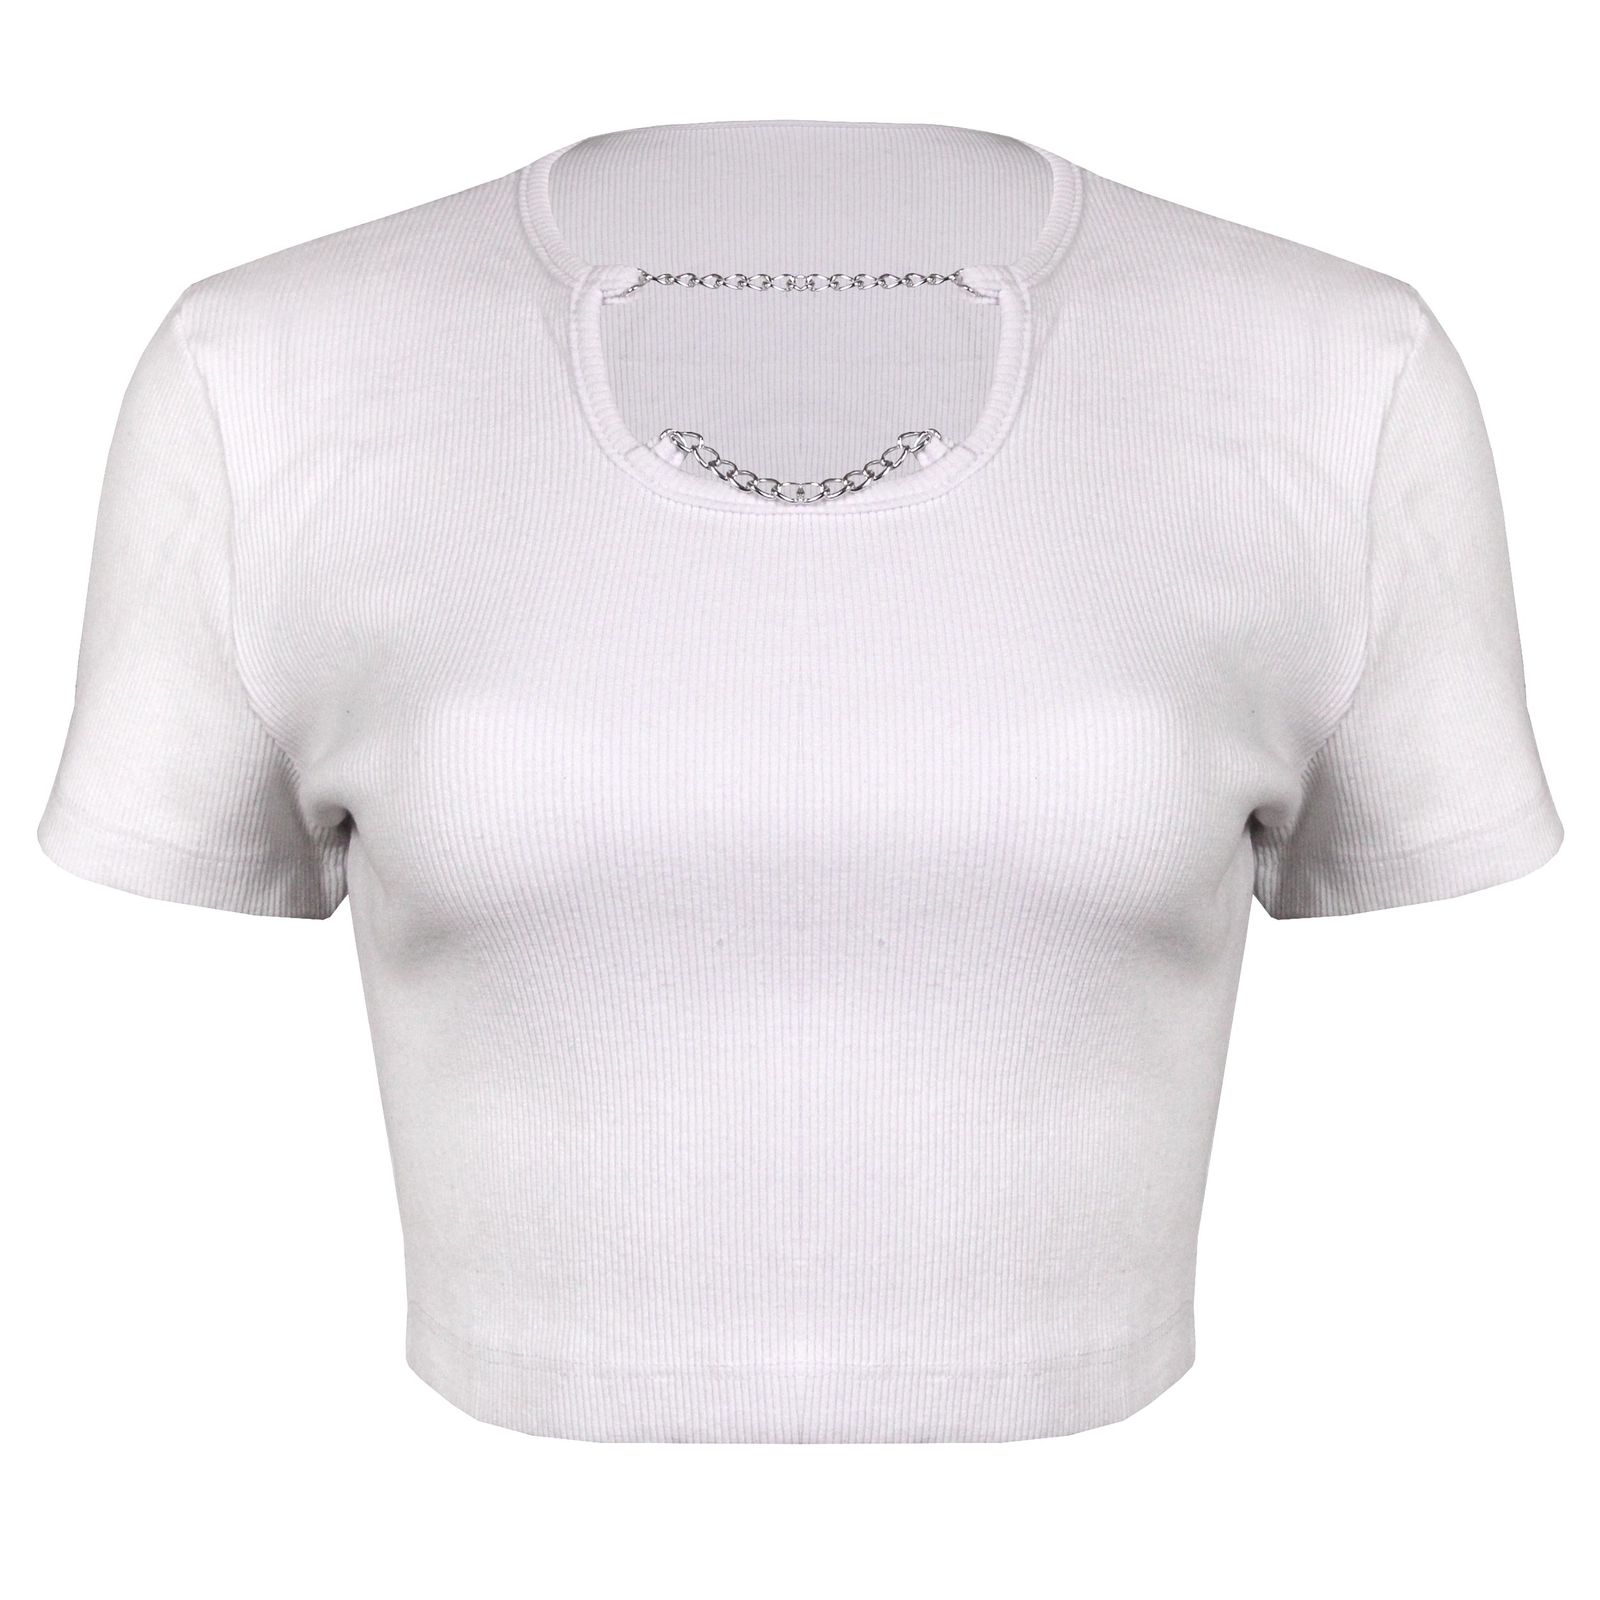 تی شرت آستین کوتاه زنانه ماییلدا مدل 4443-5430 رنگ سفید -  - 1